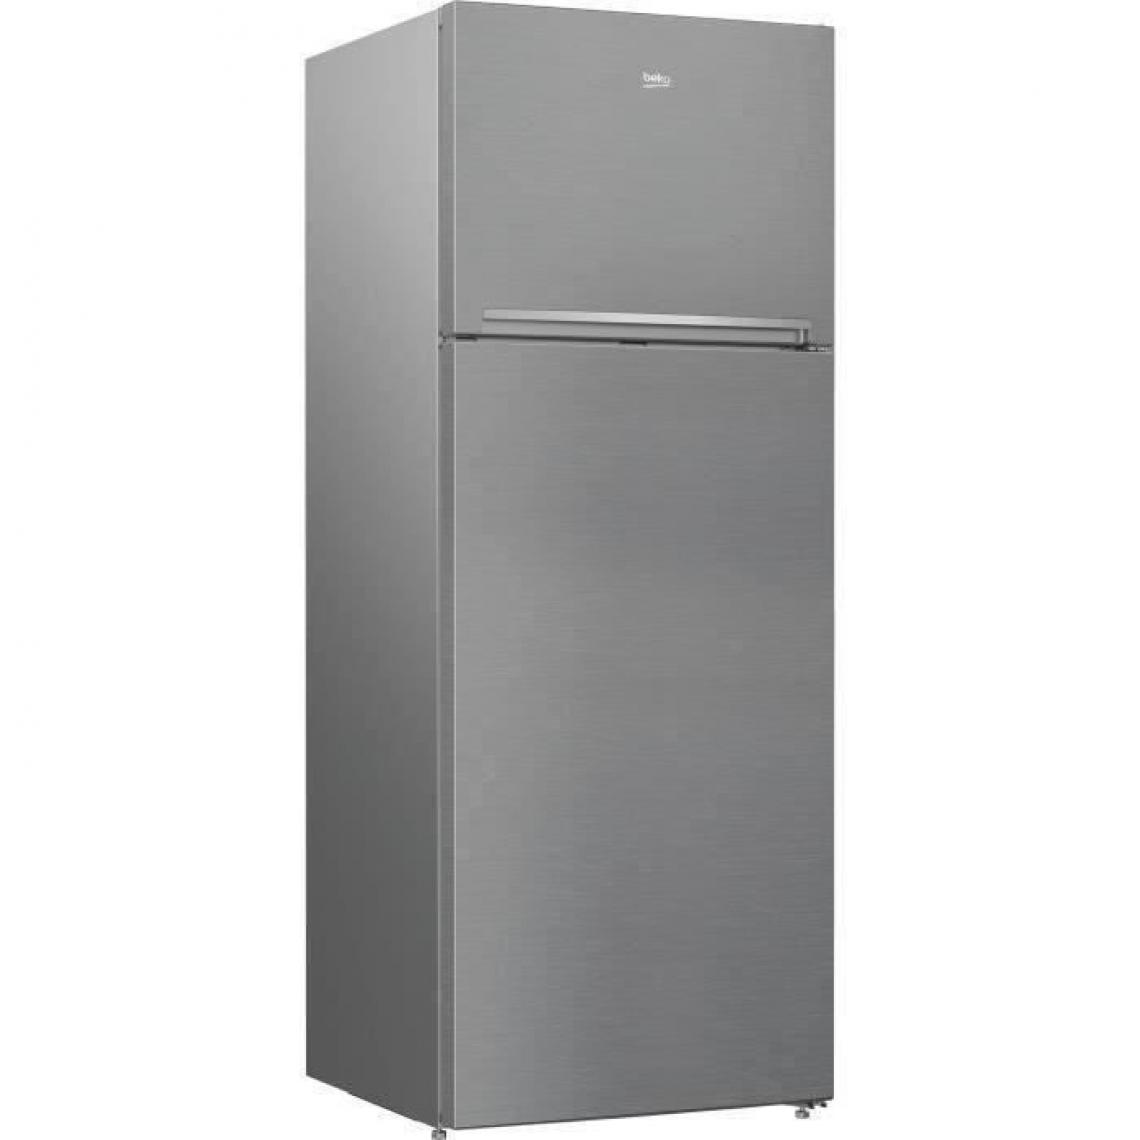 Beko - Réfrigérateur congélateur haut - RDNE455K30ZXBN - 406 L (313+93) - Froid ventilé - NeoFrost - A++ - Métal brossé - Réfrigérateur